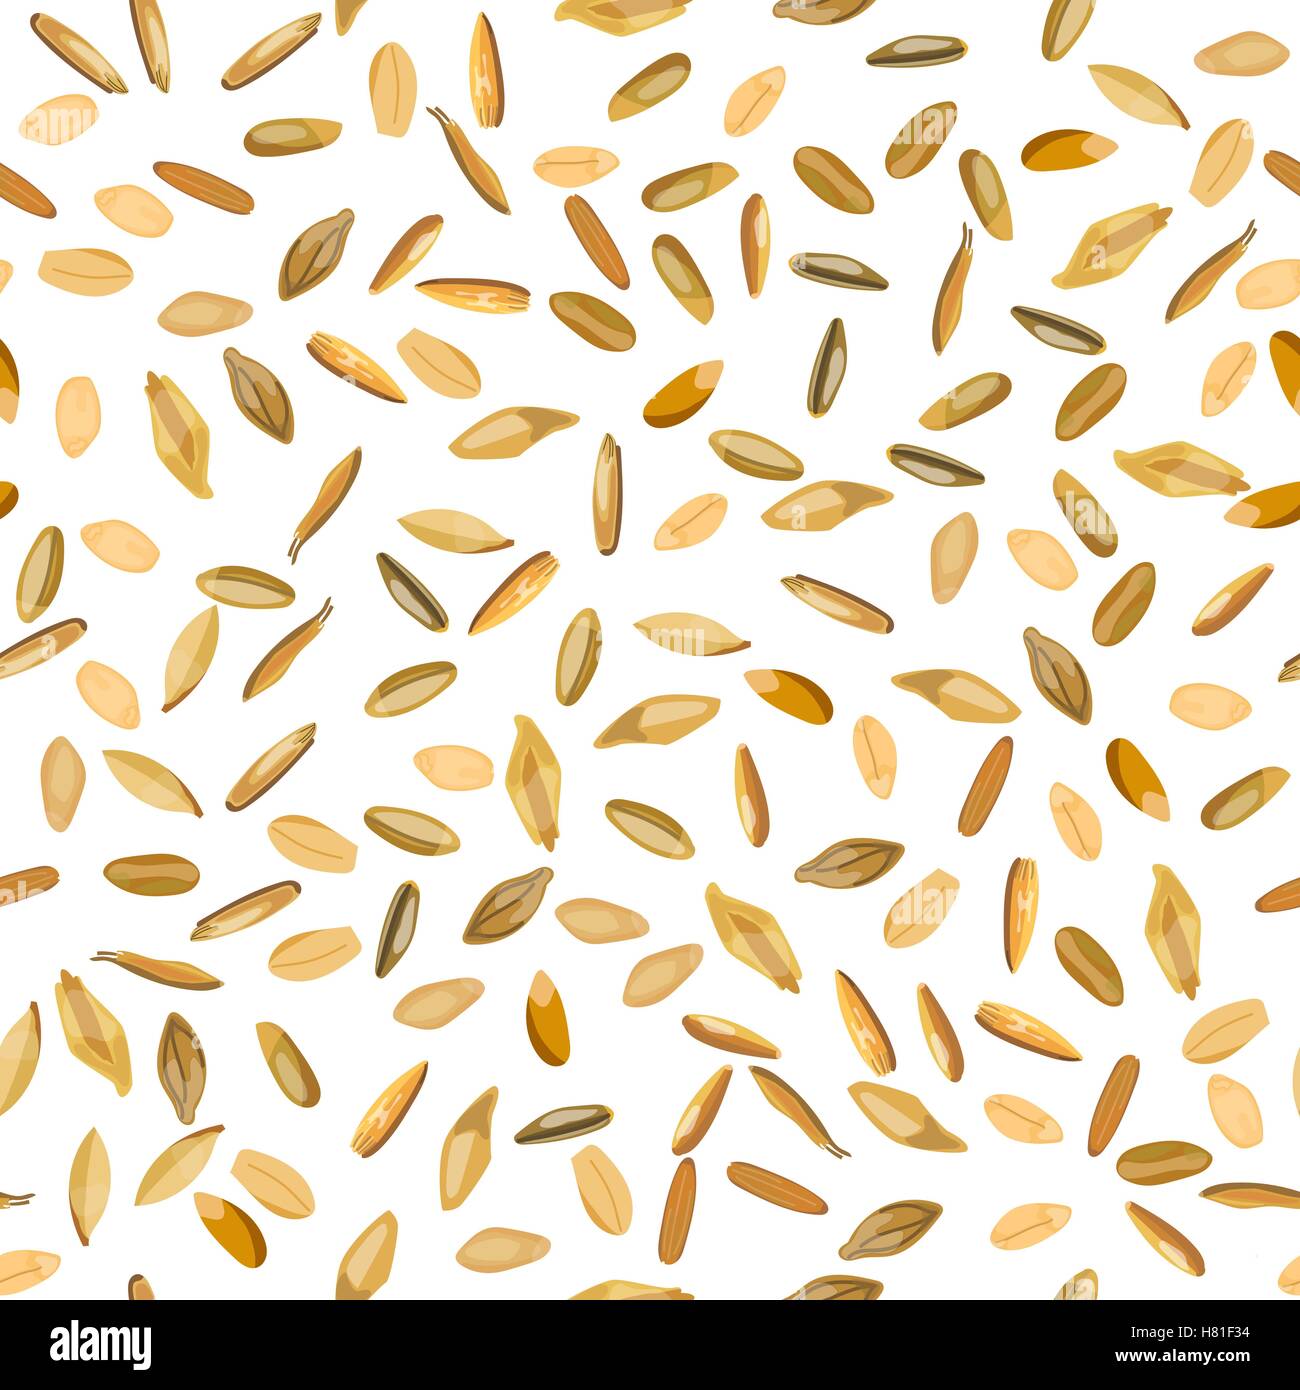 Motif transparent grains de blé et de seigle. Vector illustration. Isolées. Illustration de Vecteur